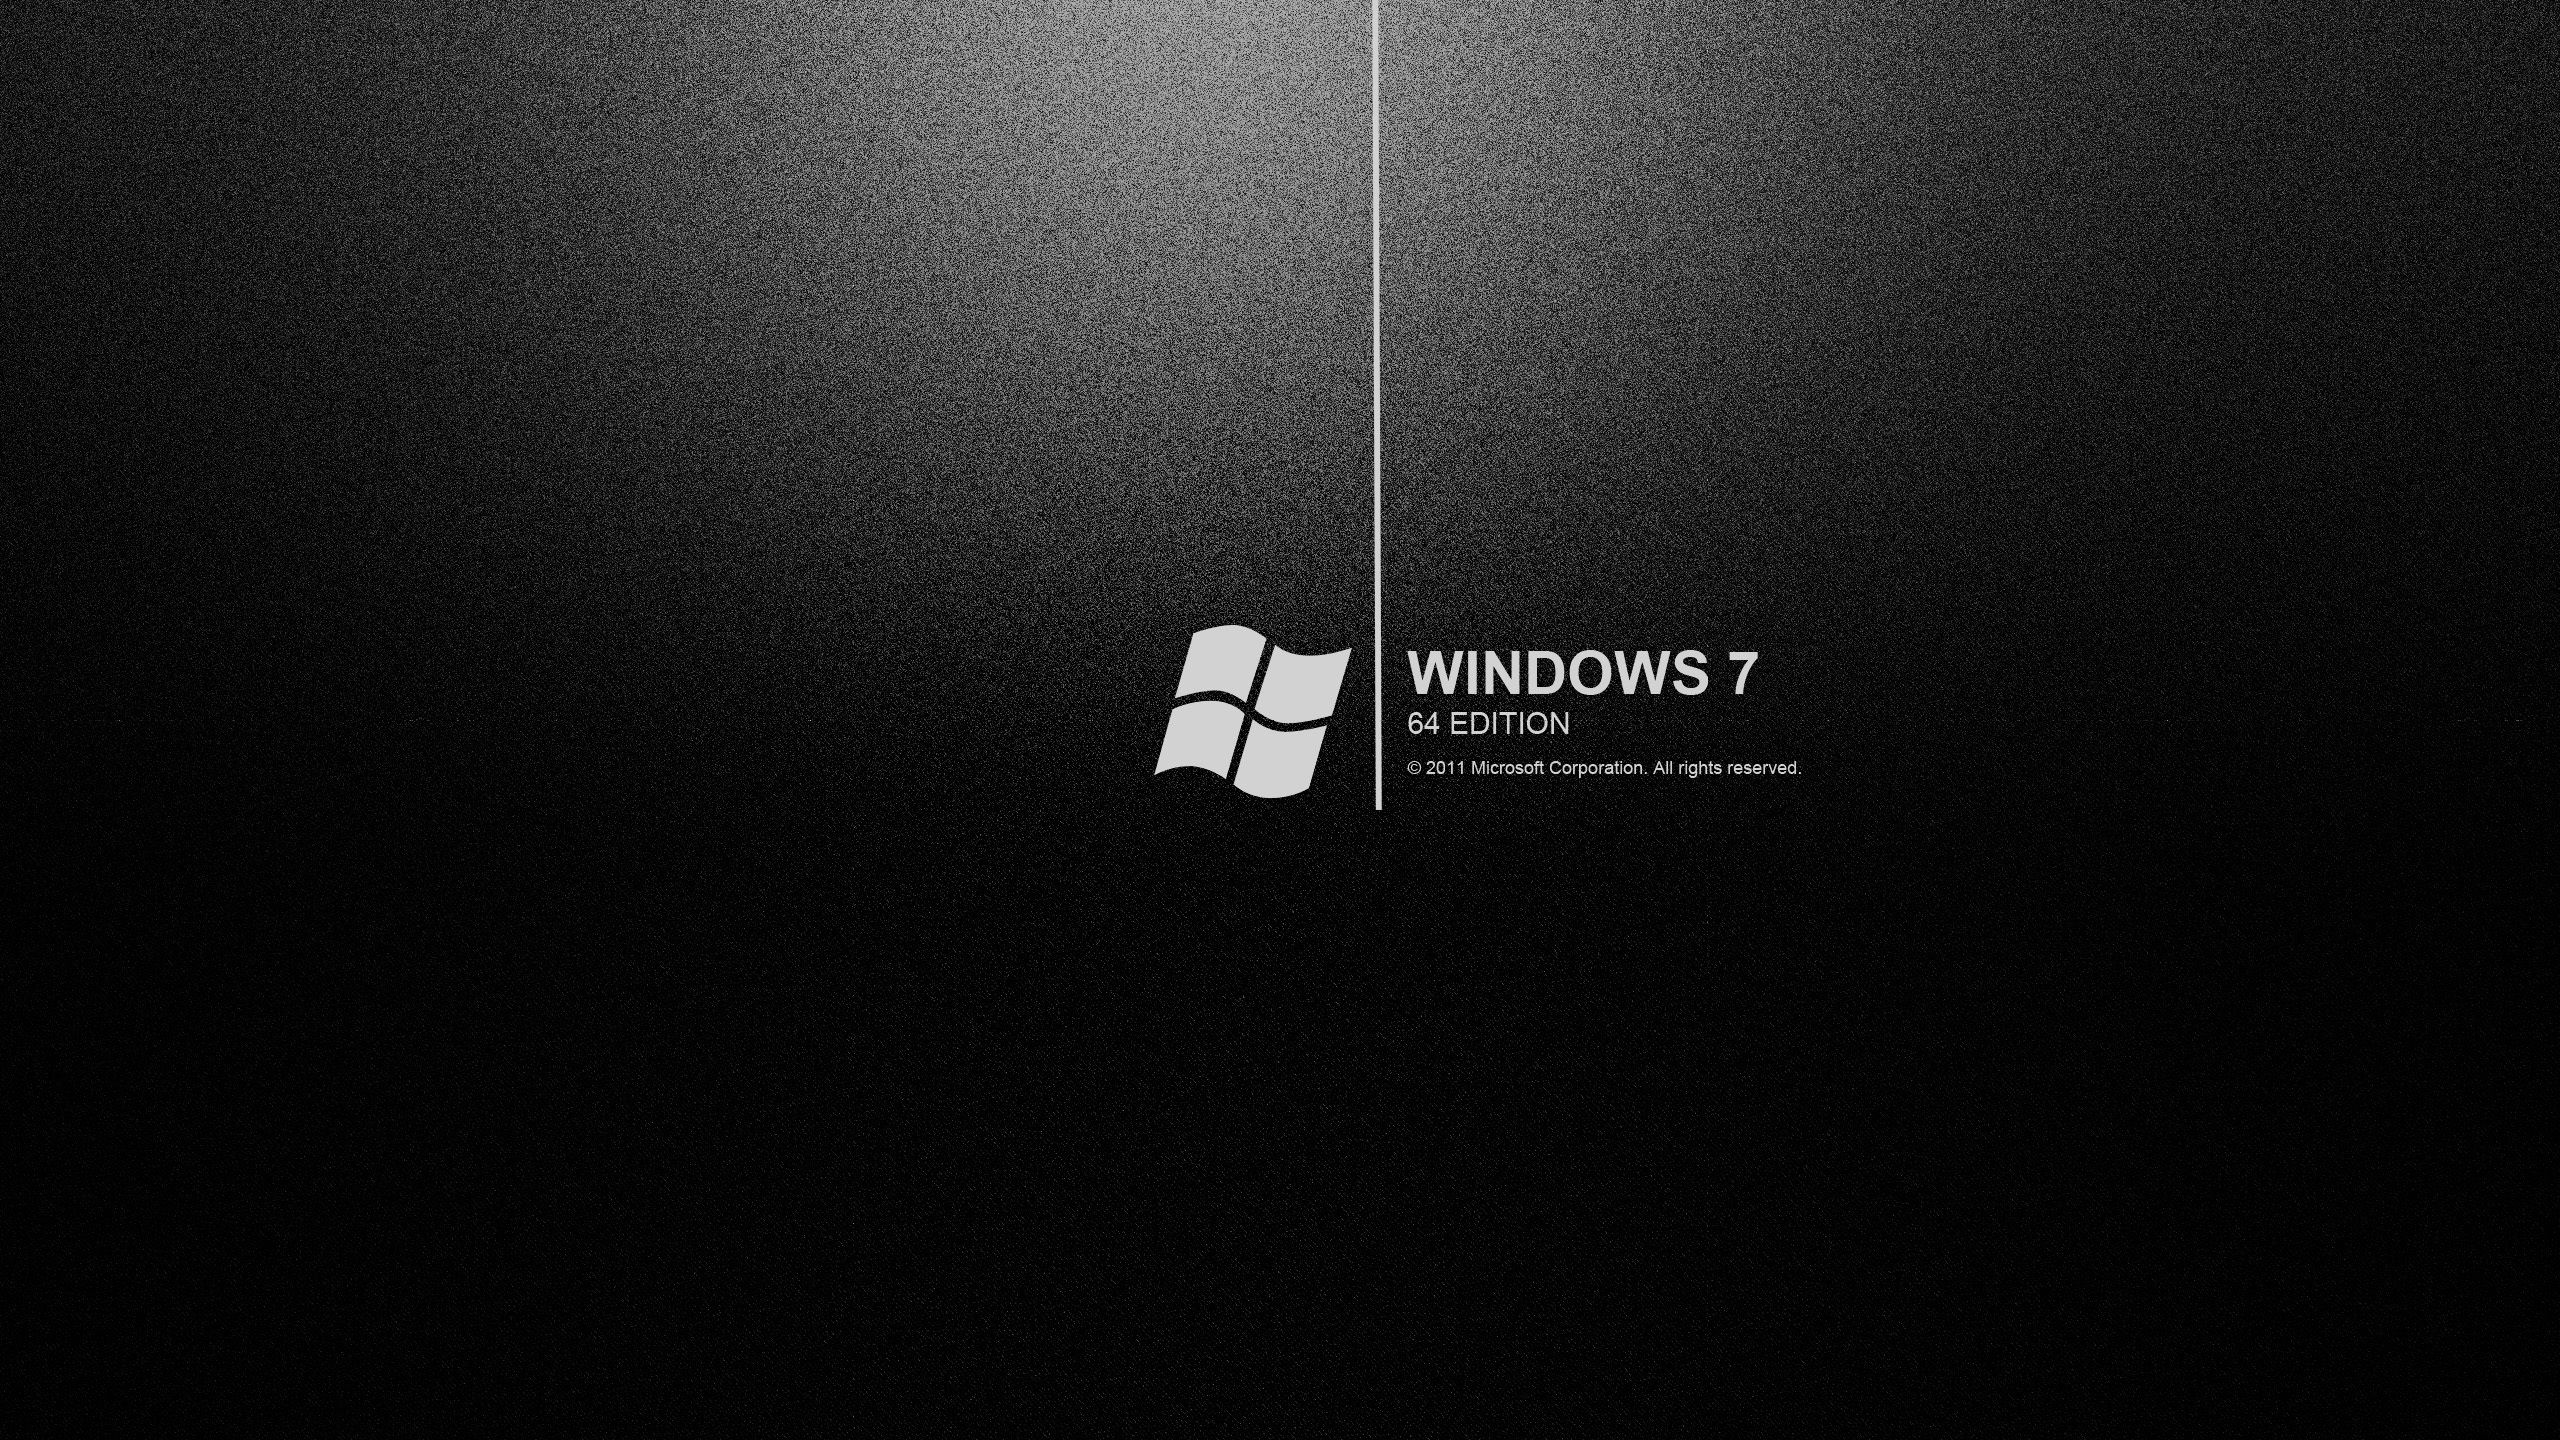 Windows 7 black wallpapers backgrounds dark hd desktop wallpapers ...